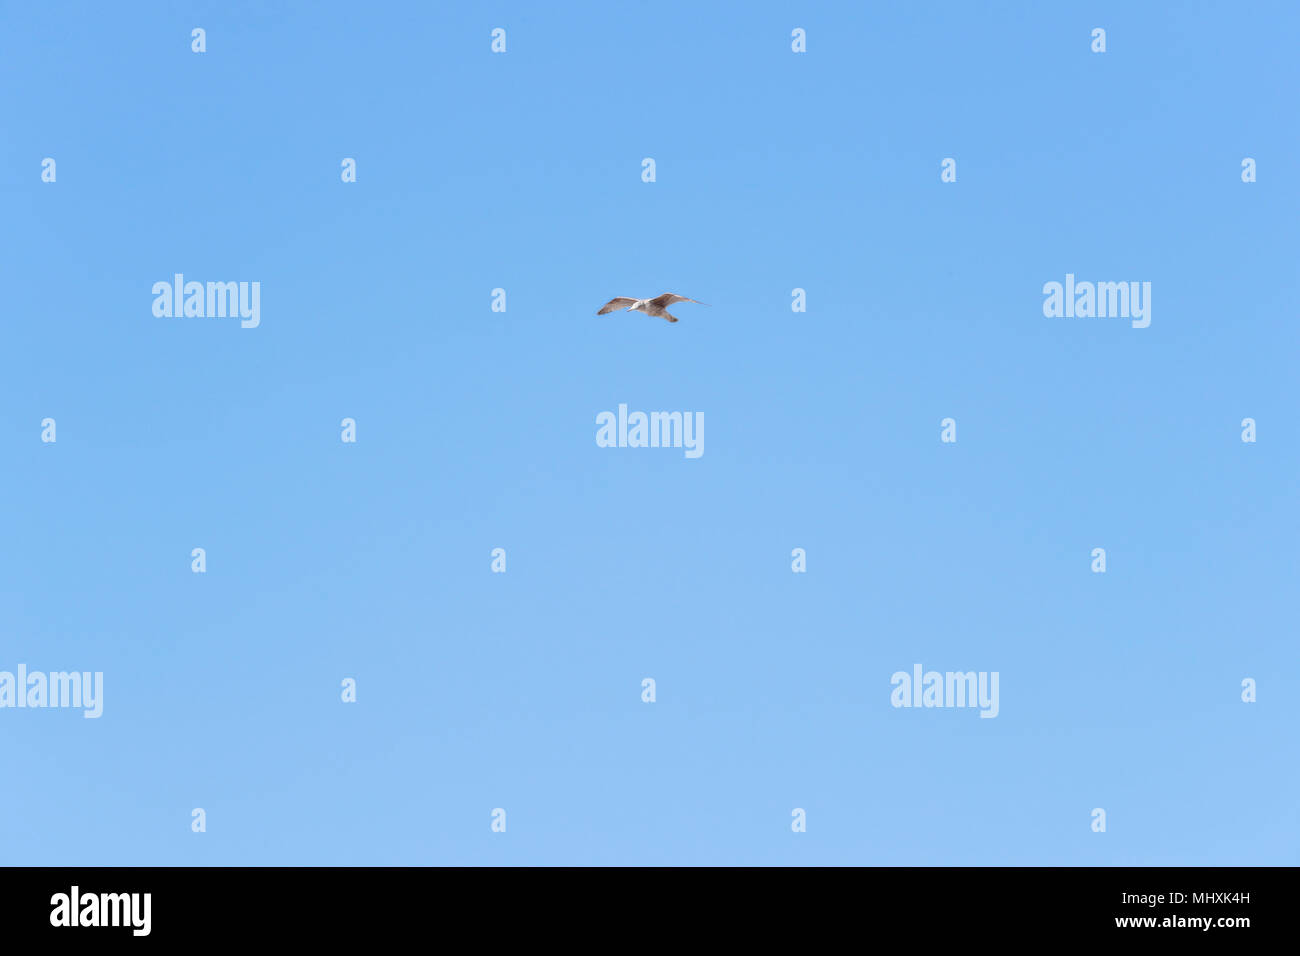 Seagull flying against bleu sky Stock Photo